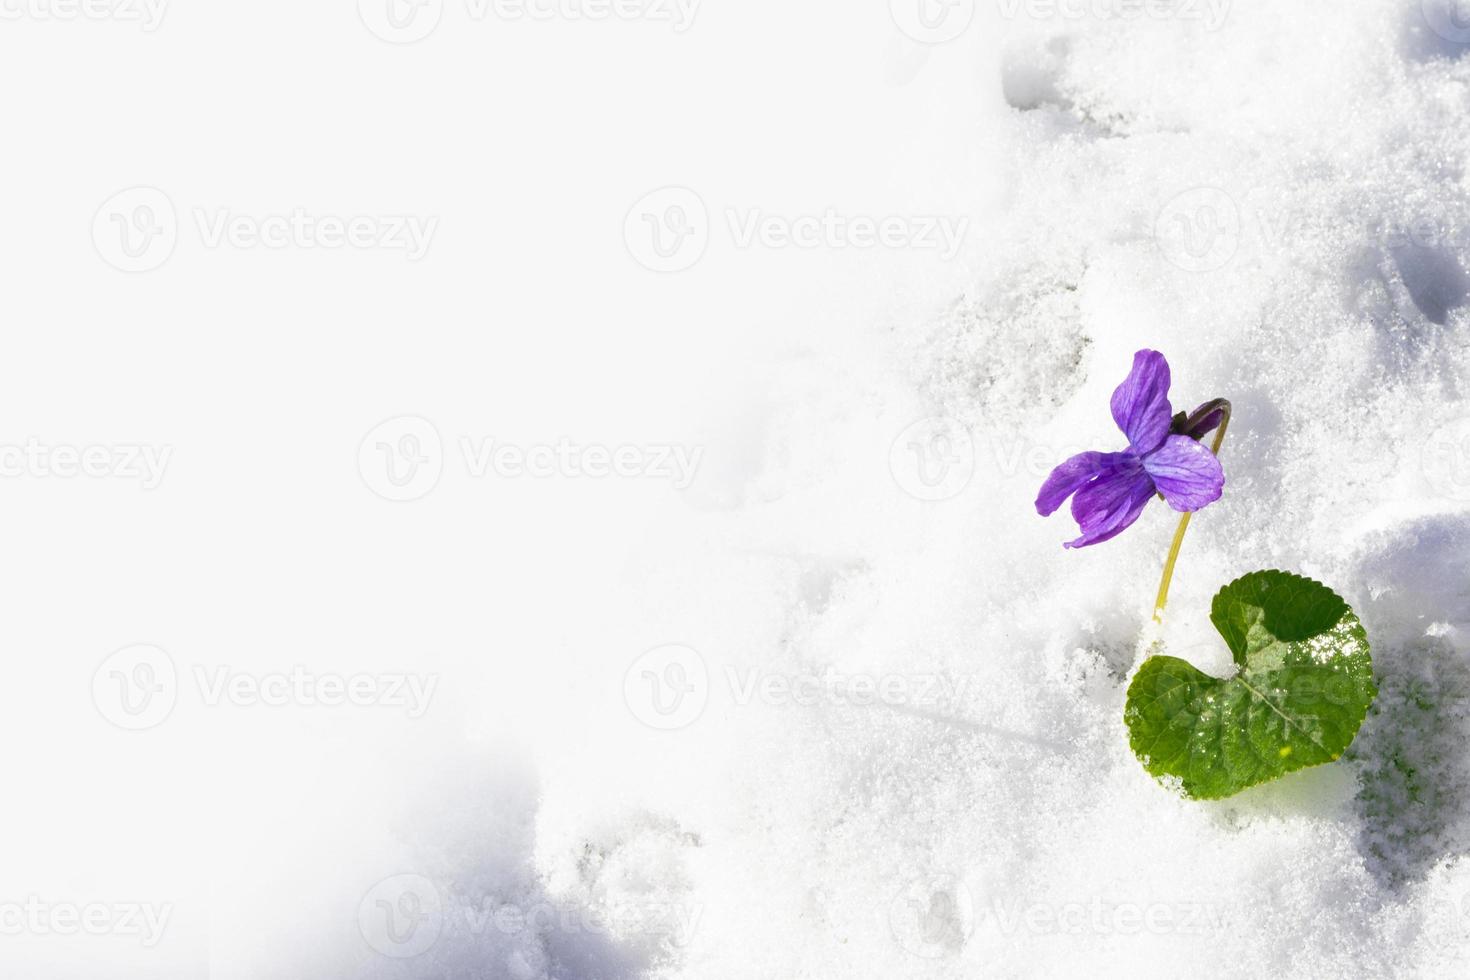 snödroppe blomma växer i snö i tidig vårskog foto